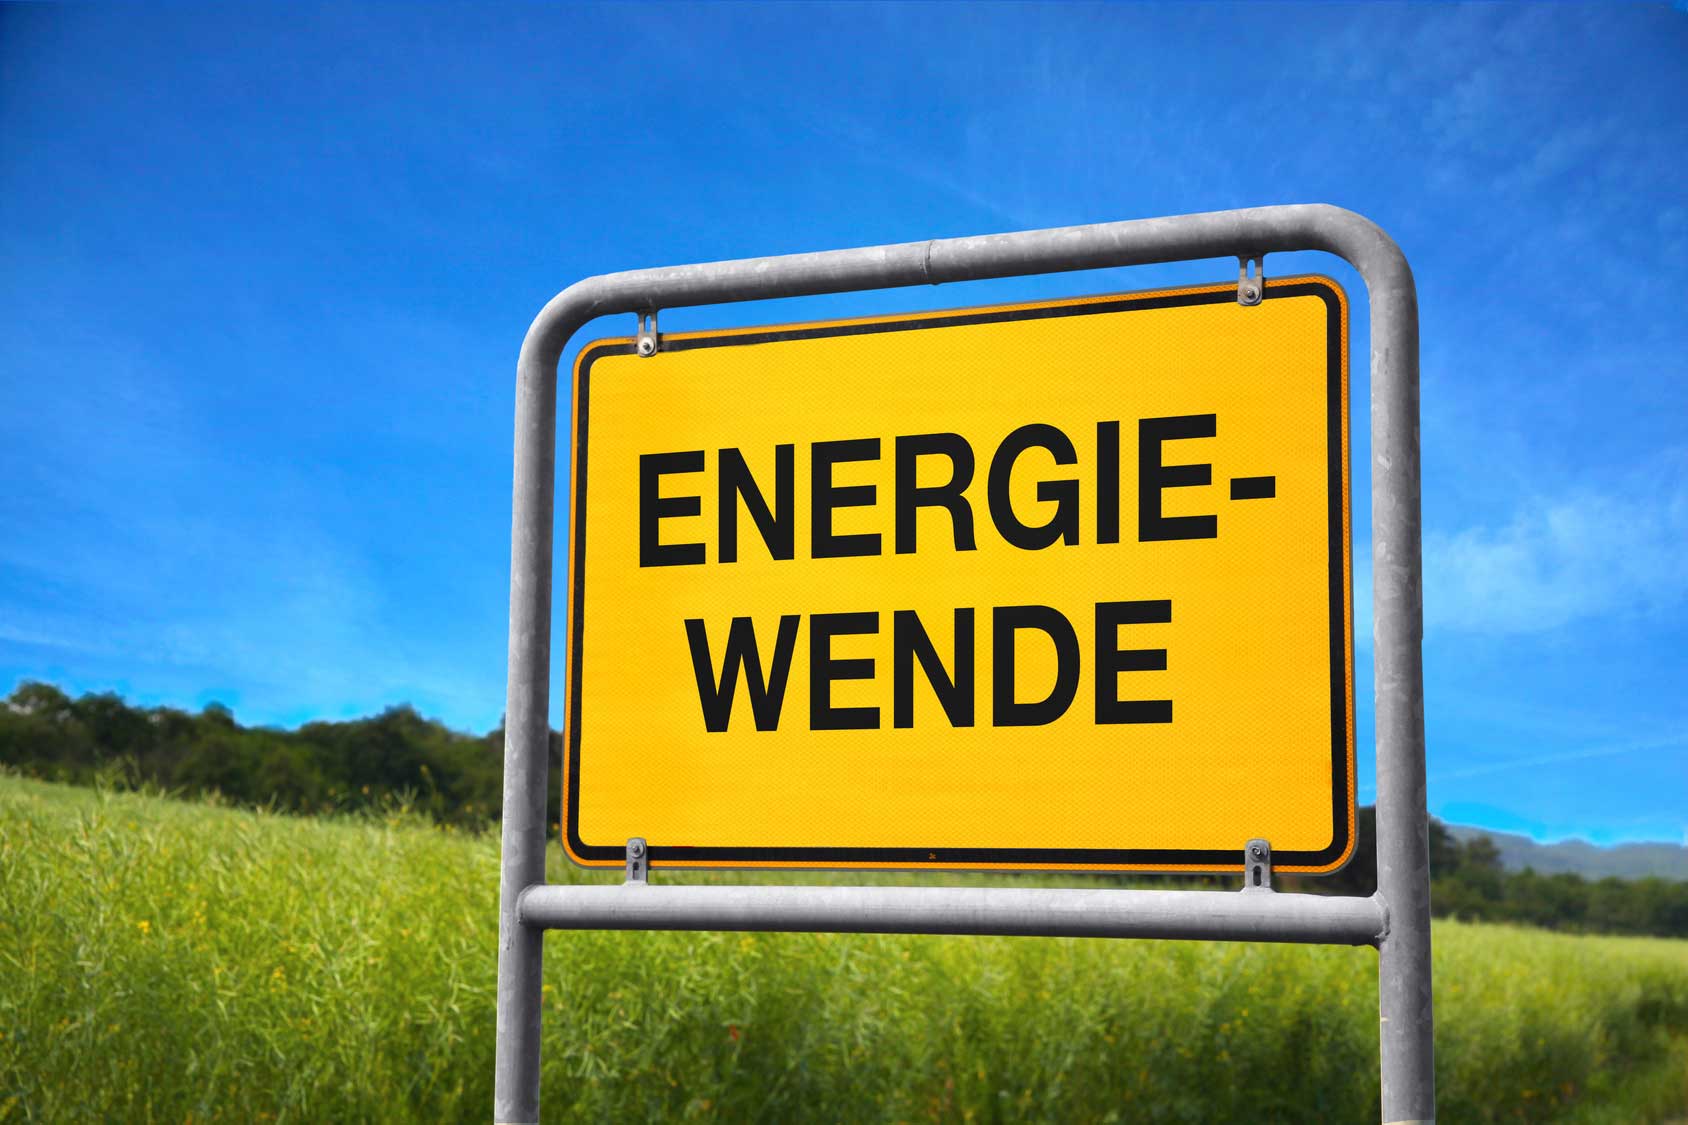 La Energiewende necesita un empujón, sobre todo en electricidad, calefacción y transporte.